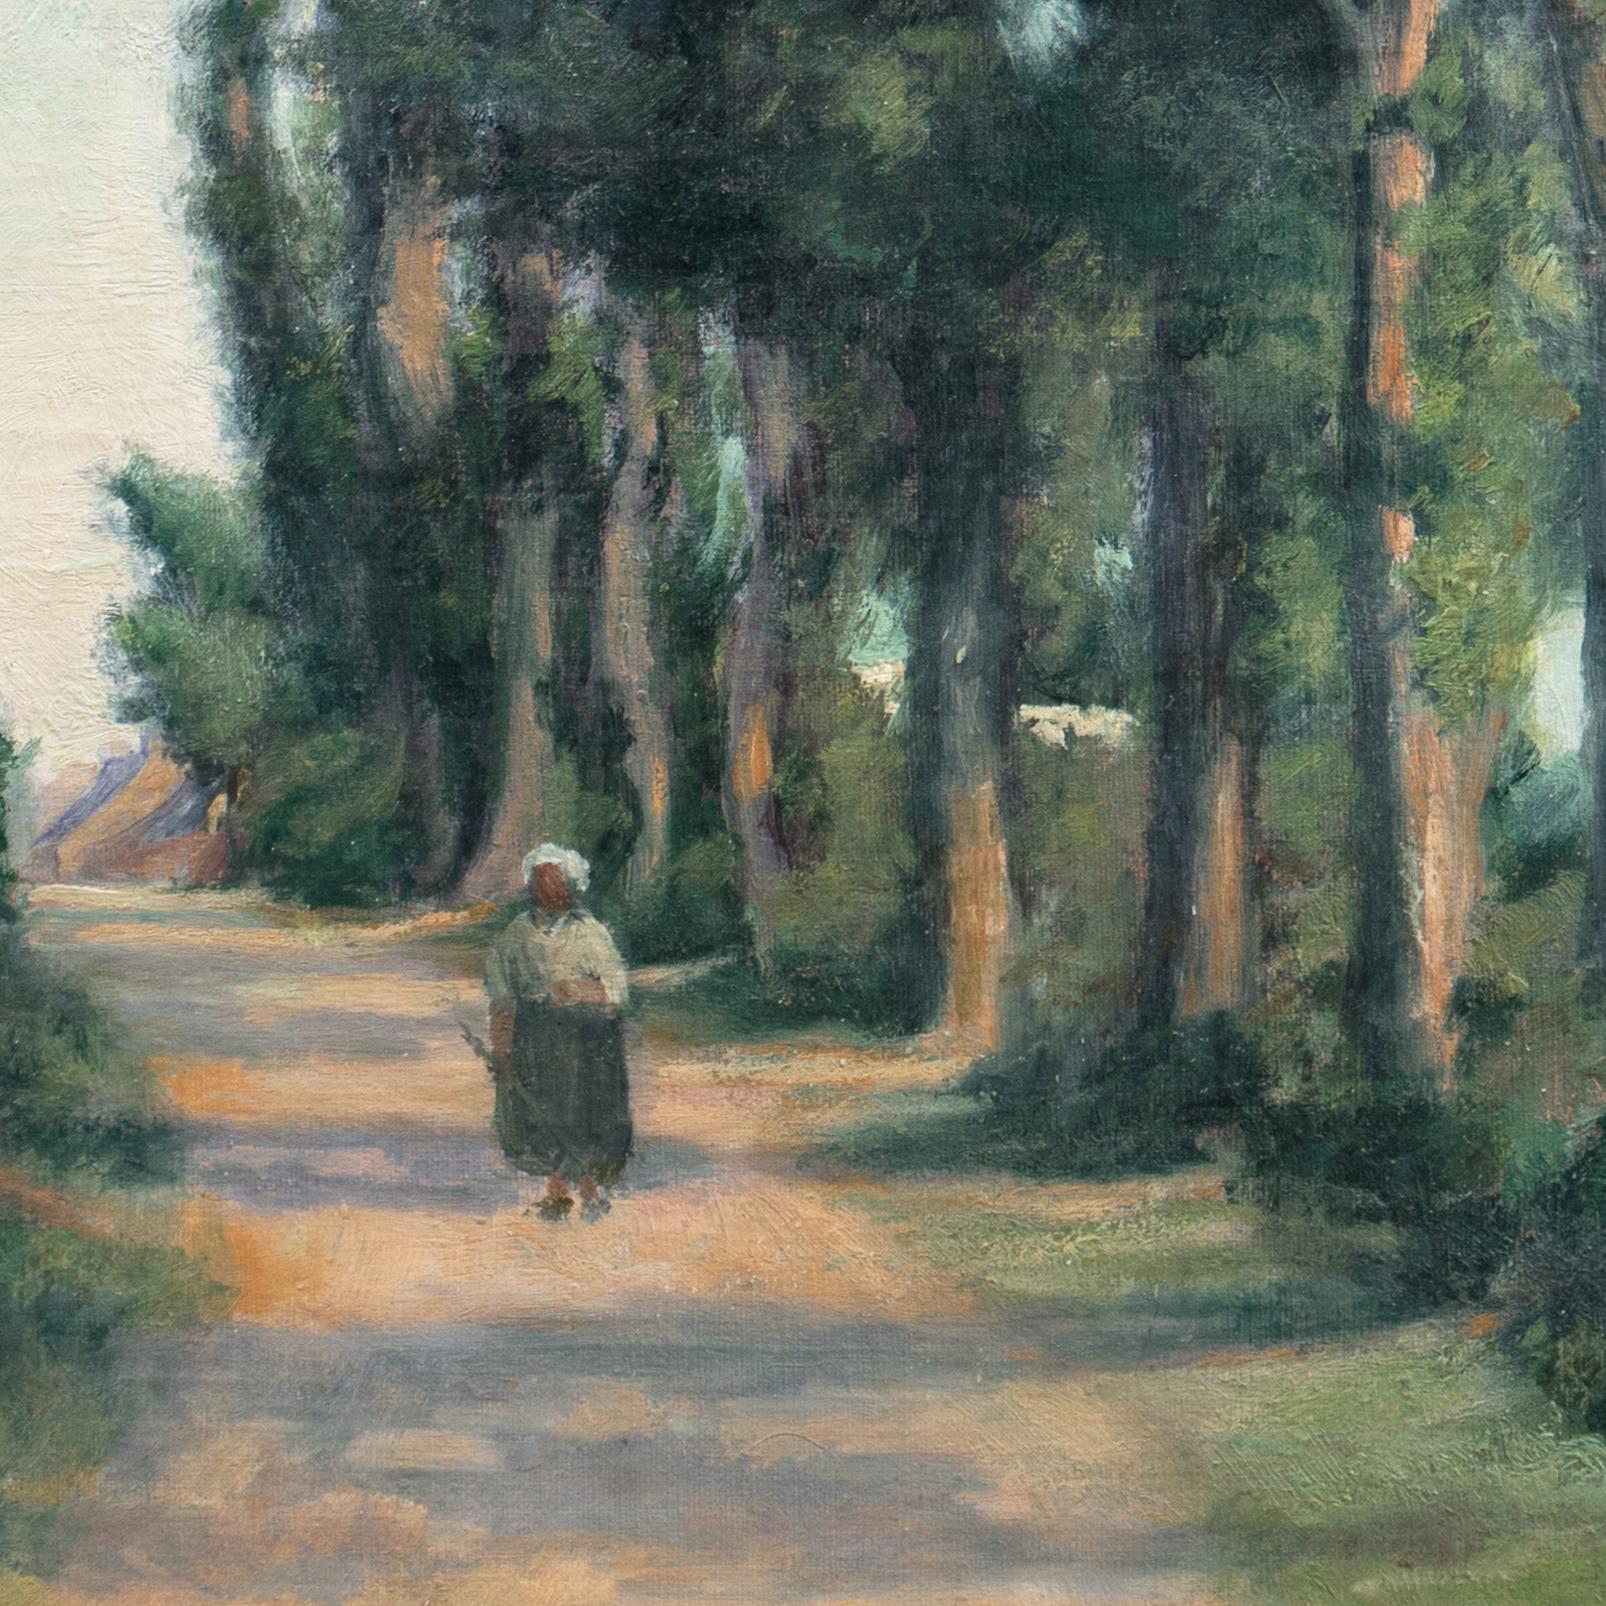 « Eucalyptus Road, Sunset », début du 20e siècle, paysage impressionniste américain - Painting de American School